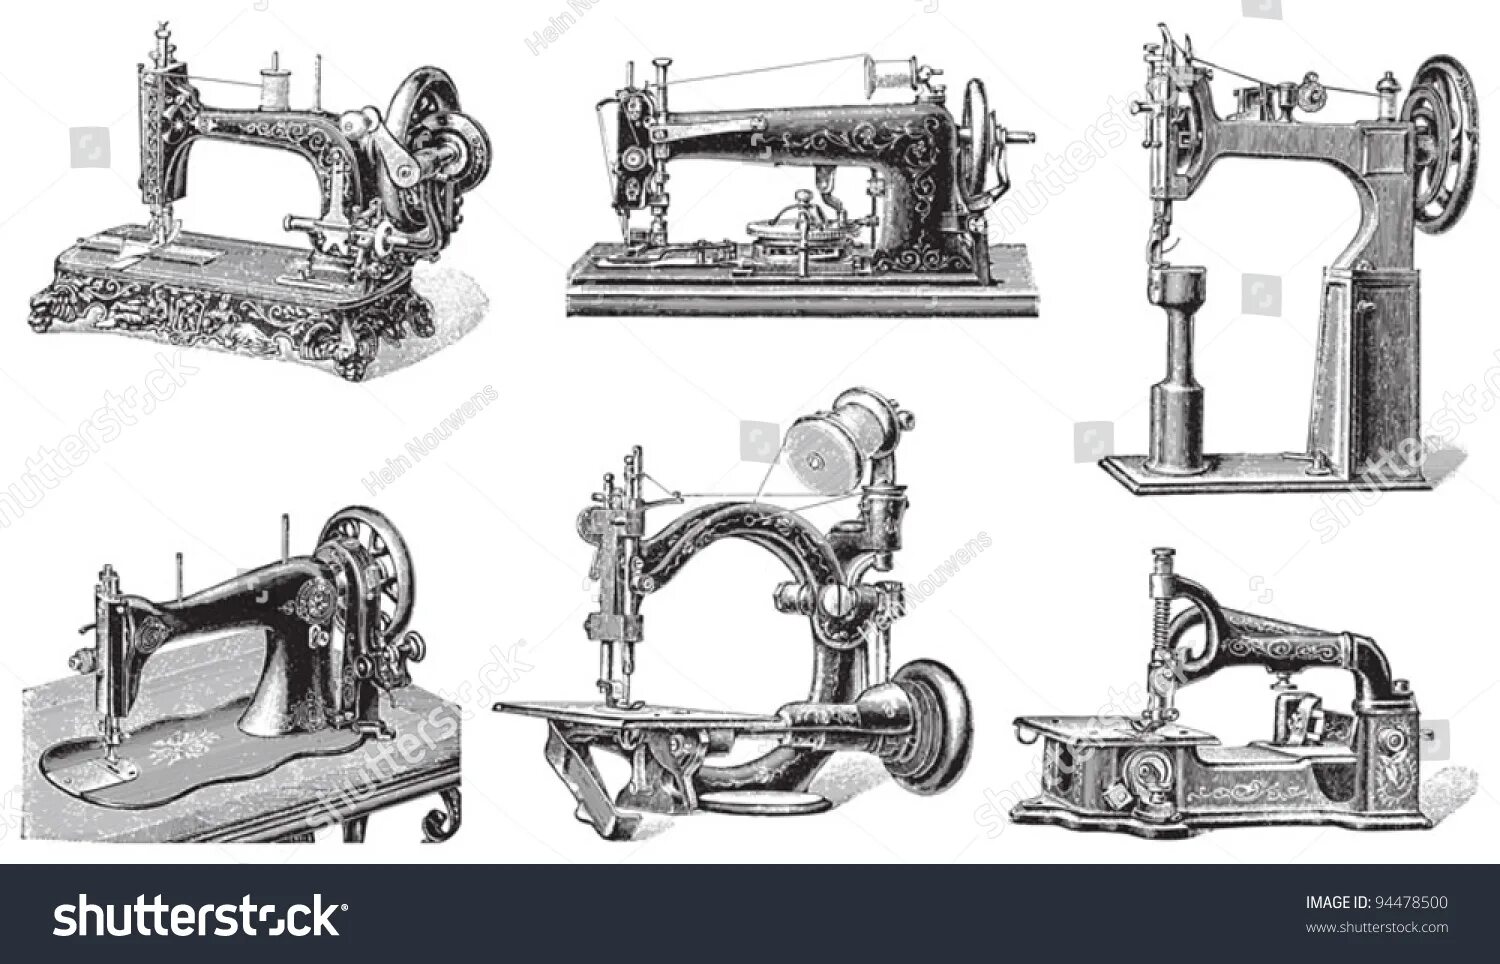 Проект швейная машинка. Первый проект швейной машины Леонардо да Винчи. Швейная машинка изобретение 19 века. Швейная машинка Леонардо да Винчи. Швейная машина Келлер ножная.